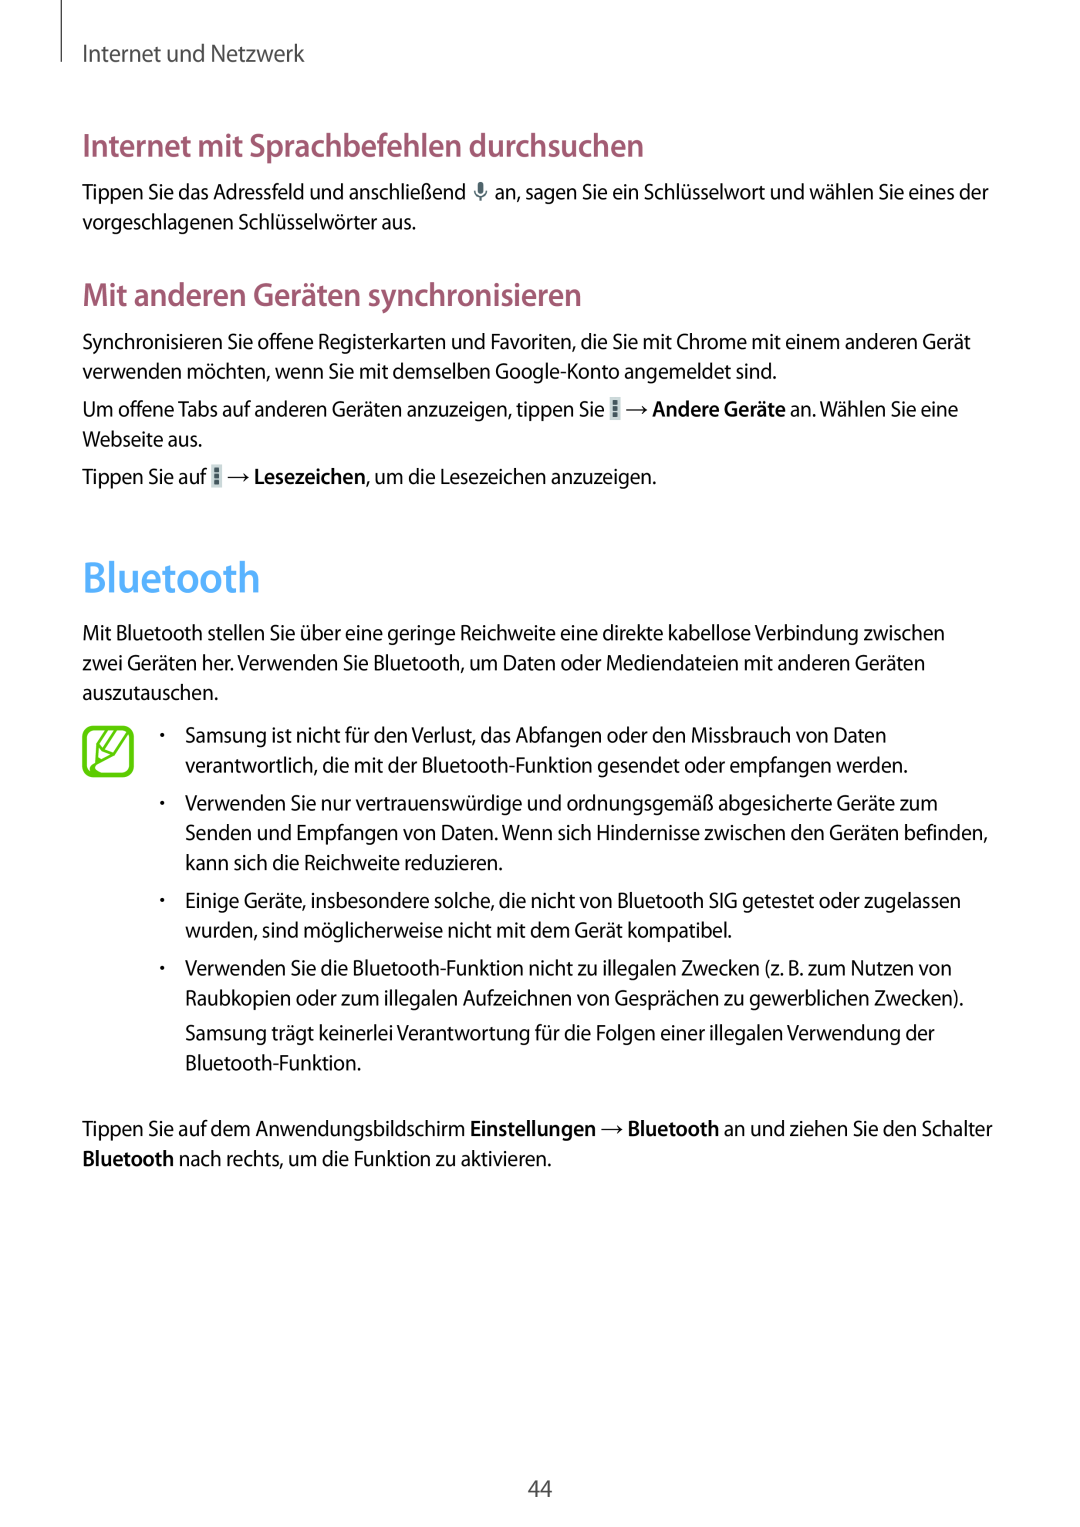 Samsung SM-T110NYKAATO manual Bluetooth, Mit anderen Geräten synchronisieren, Internet mit Sprachbefehlen durchsuchen 